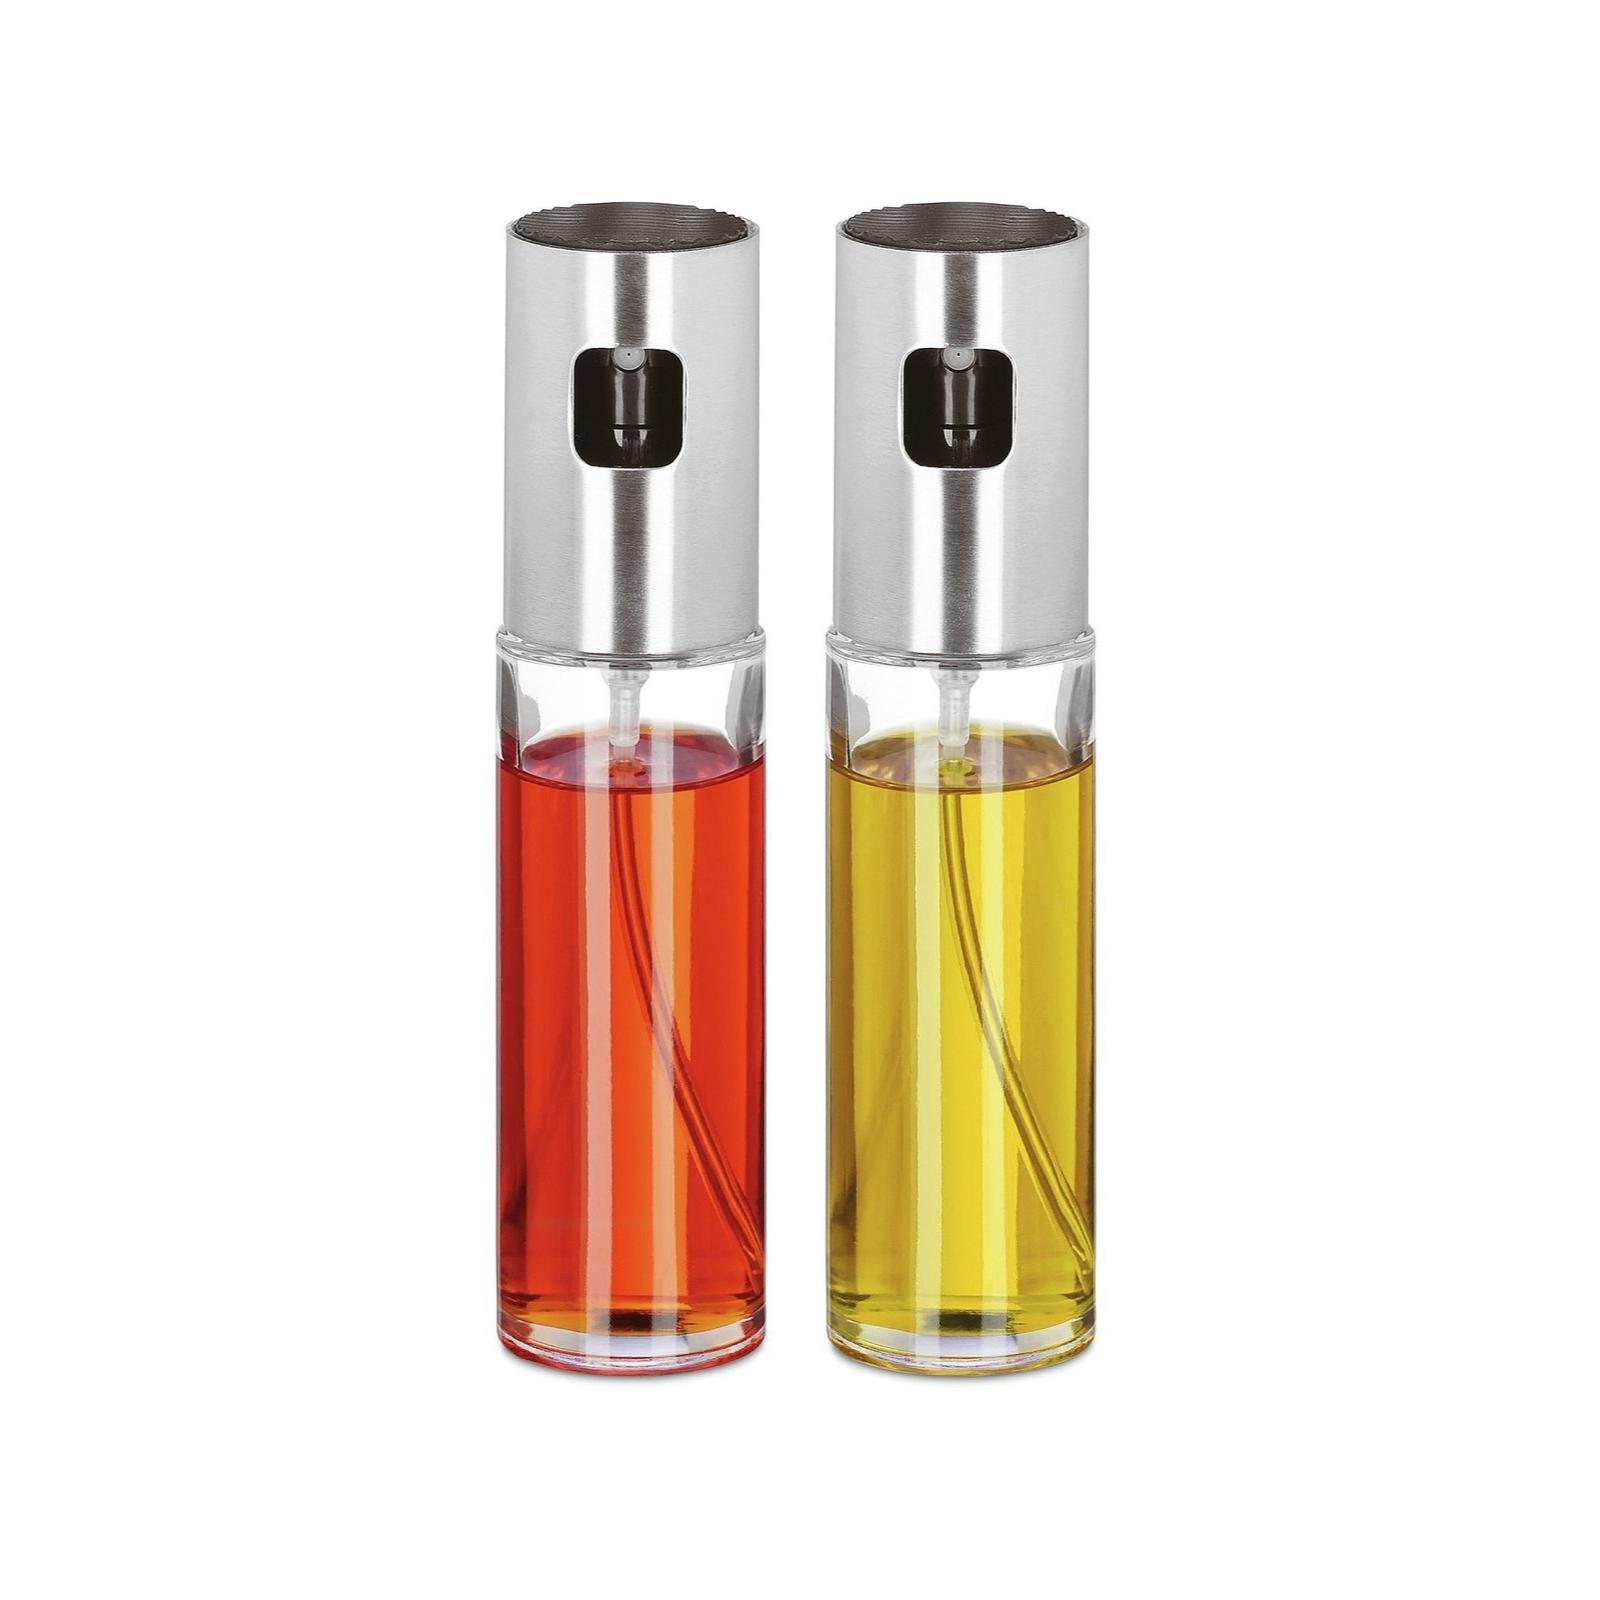 Oil / vinegar sprayer
 Sambonet